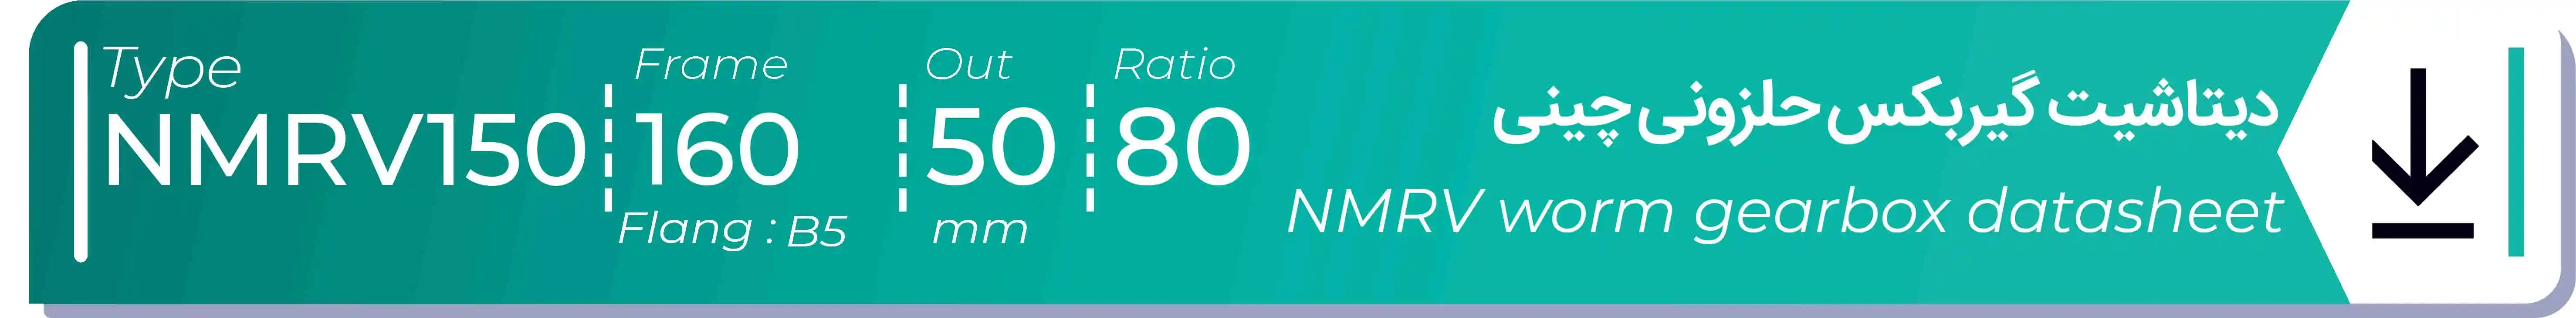  دیتاشیت و مشخصات فنی گیربکس حلزونی چینی   NMRV150  -  با خروجی 50- میلی متر و نسبت80 و فریم 160